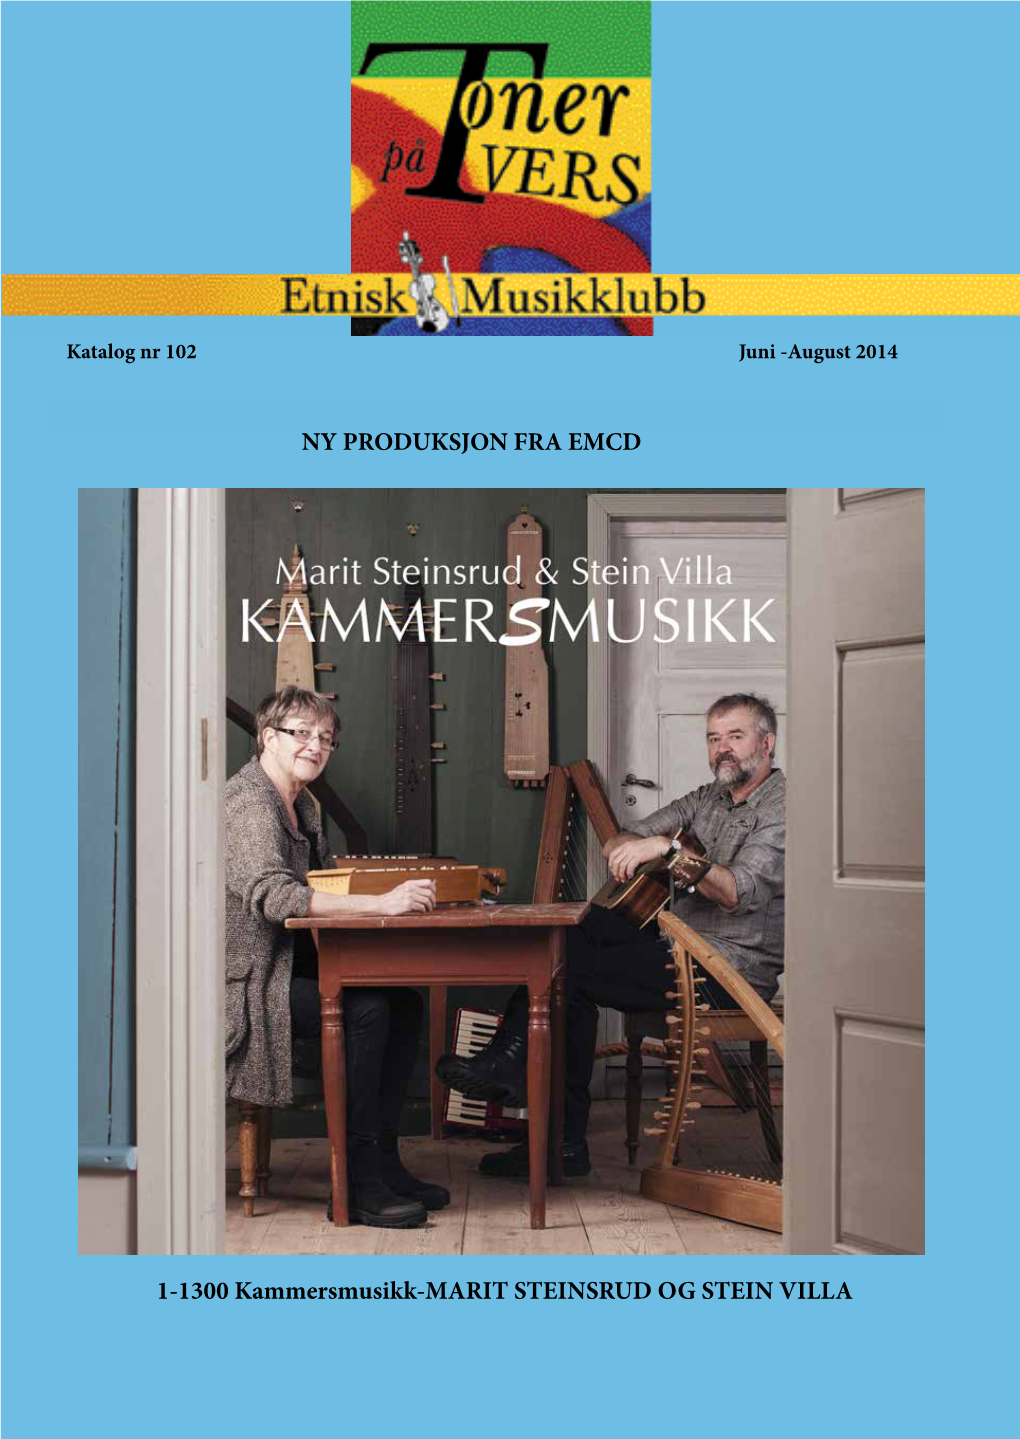 1-1300 Kammersmusikk-MARIT STEINSRUD OG STEIN VILLA NY